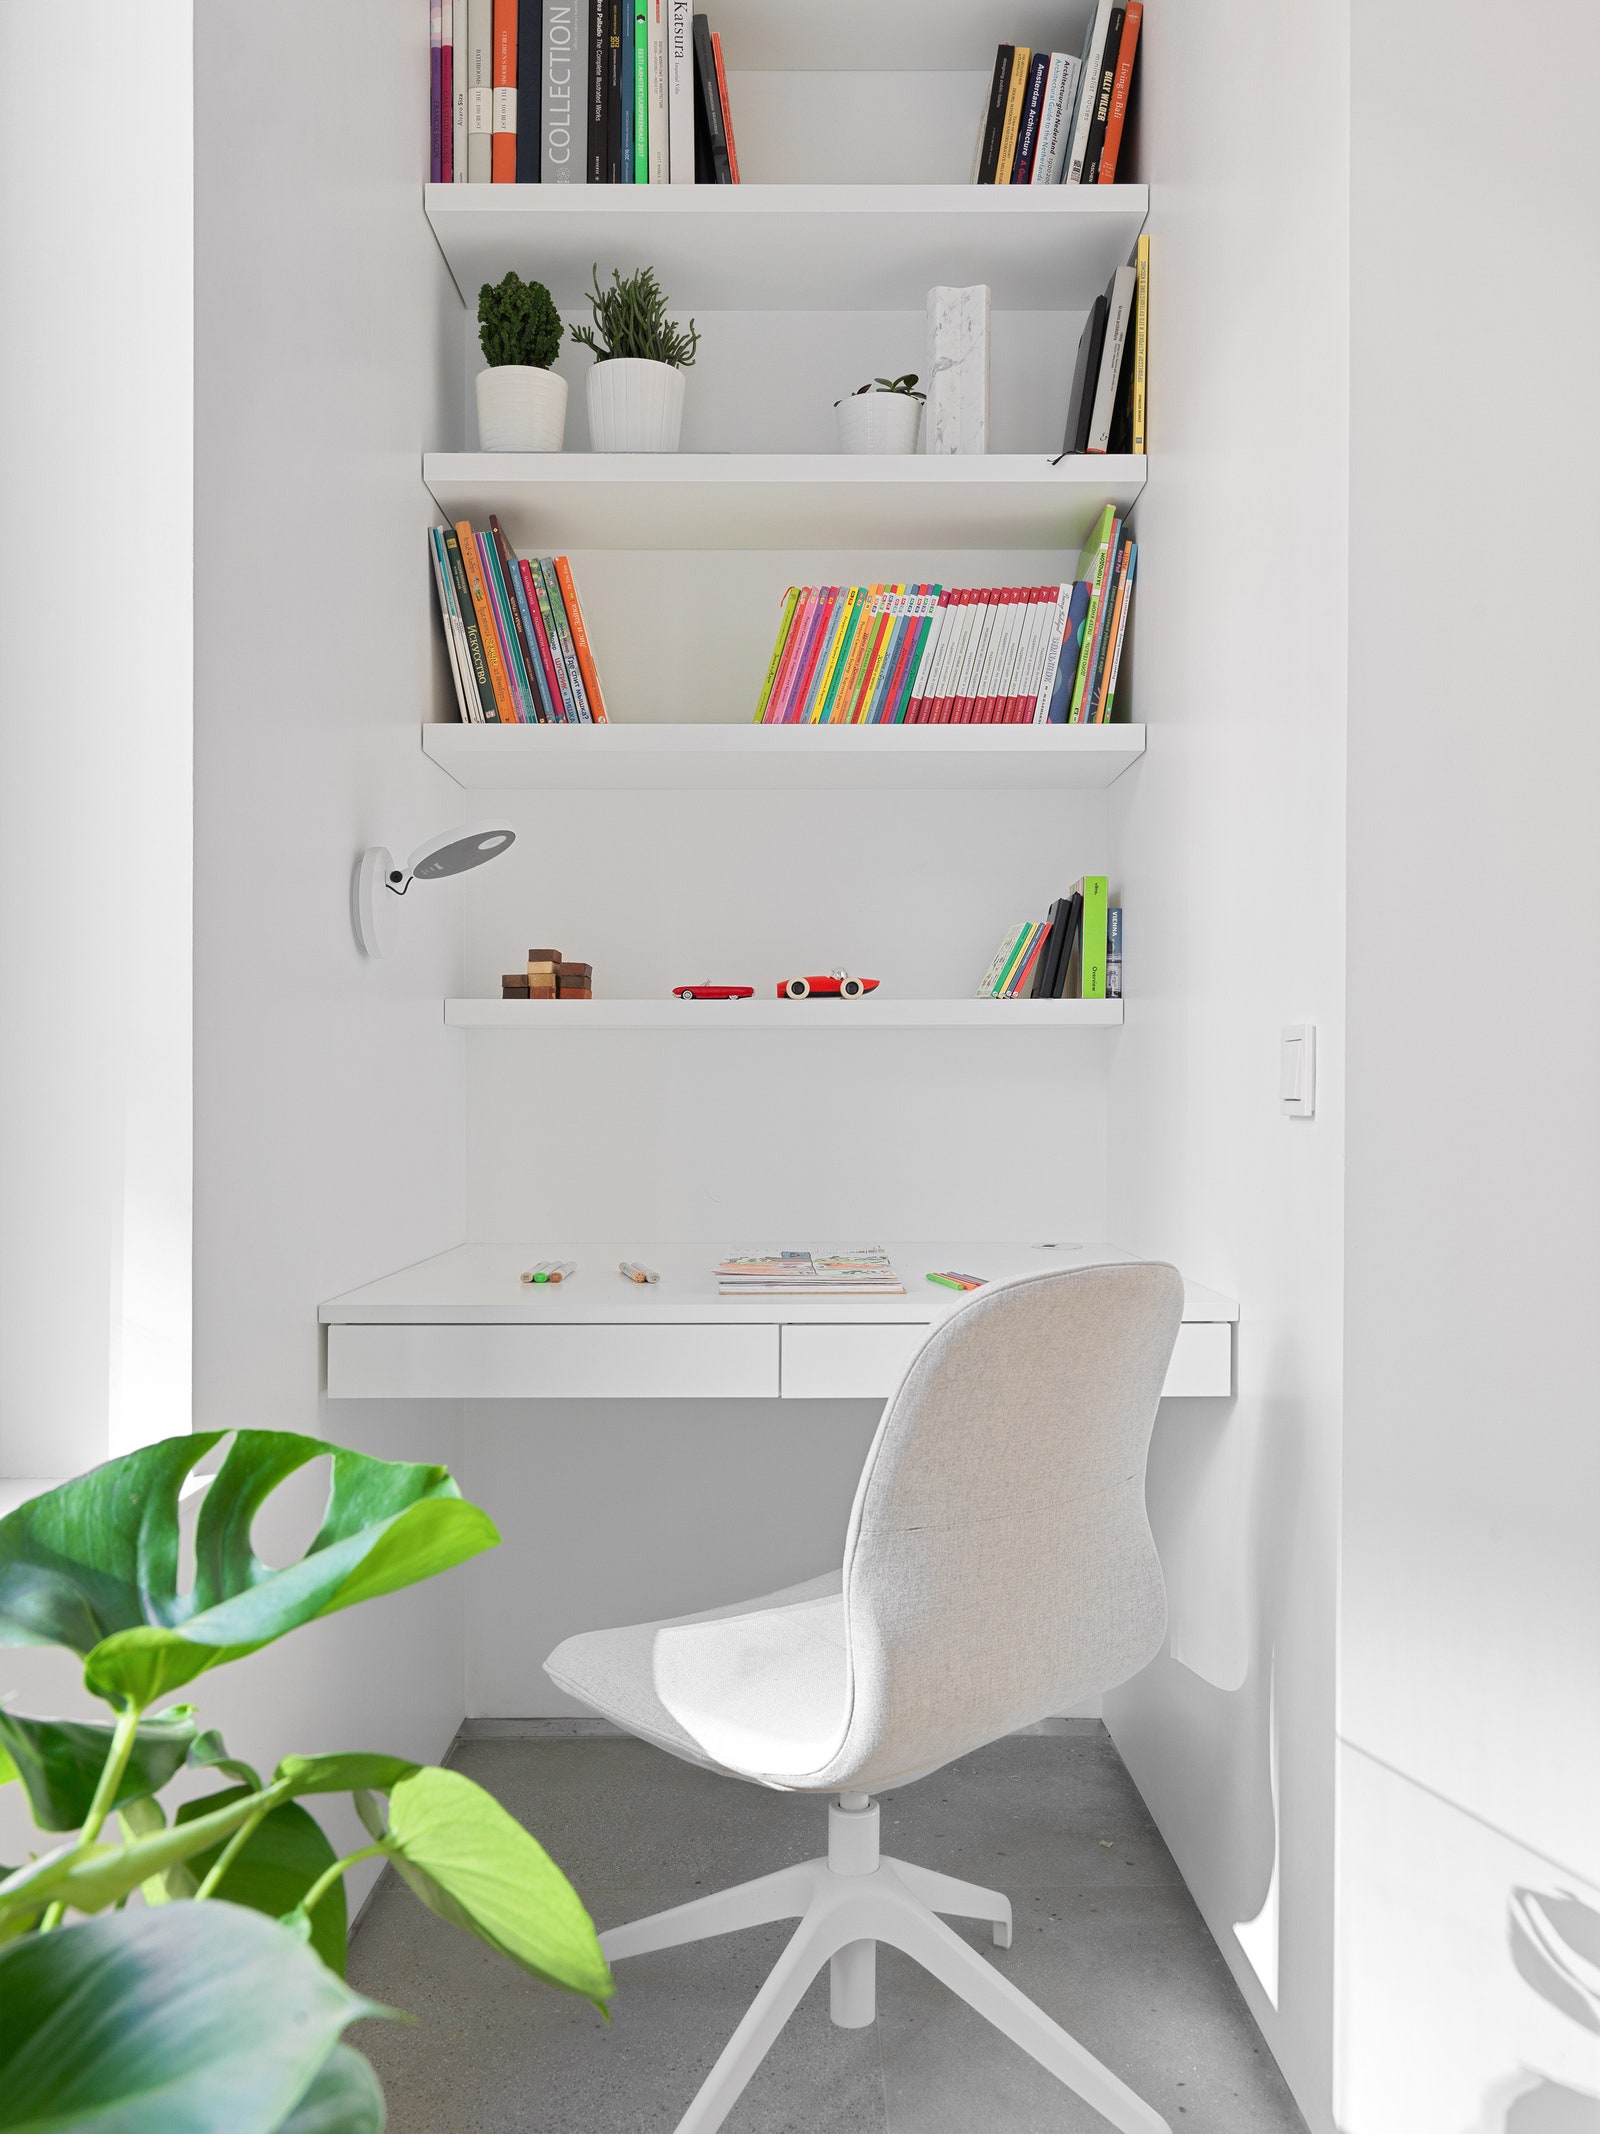 Детская комната. Стол кровать и шкафы сделаны по эскизам архитектора бра Artemide стул по дизайну Вирджила Абло для IKEA.